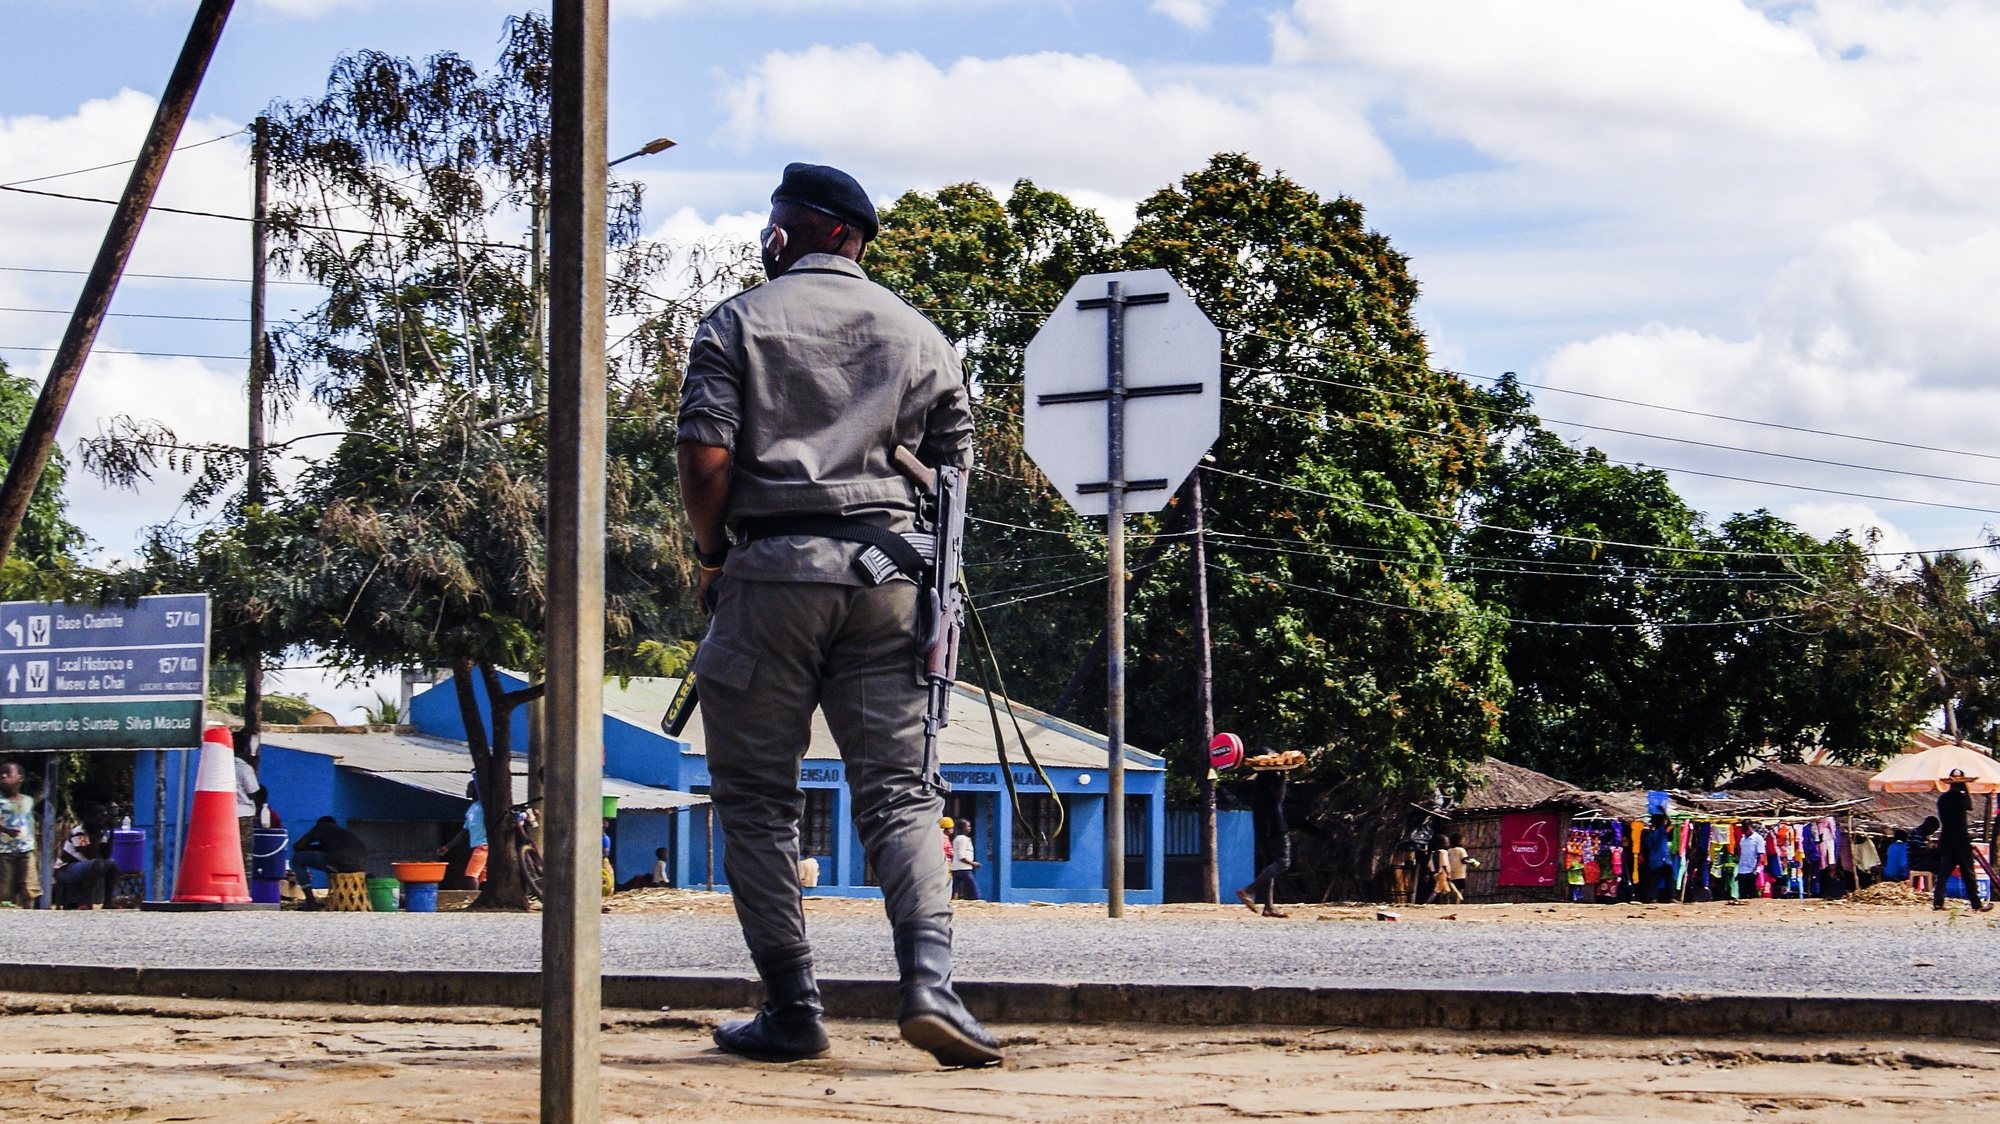 Posto de controlo policial Silva Macua, na Estrada Nacional Número 380, à entrada dos distritos de Quissanga e Macomia, Cabo Delgado, Moçambique, 21 de agosto de 2021. As vilas e aldeias devastadas por rebeldes nos distritos de Quissanga e Macomia têm as marcas do terror estampadas em cada esquina e, entre ruínas, ensaia-se a reconstrução, mas o trauma é grande e paira ainda o medo entre as comunidades (ACOMPANHA TEXTO DO DIA 23 DE AGOSTO DE 2021). LUÍSA NHANTUMBO/LUSA